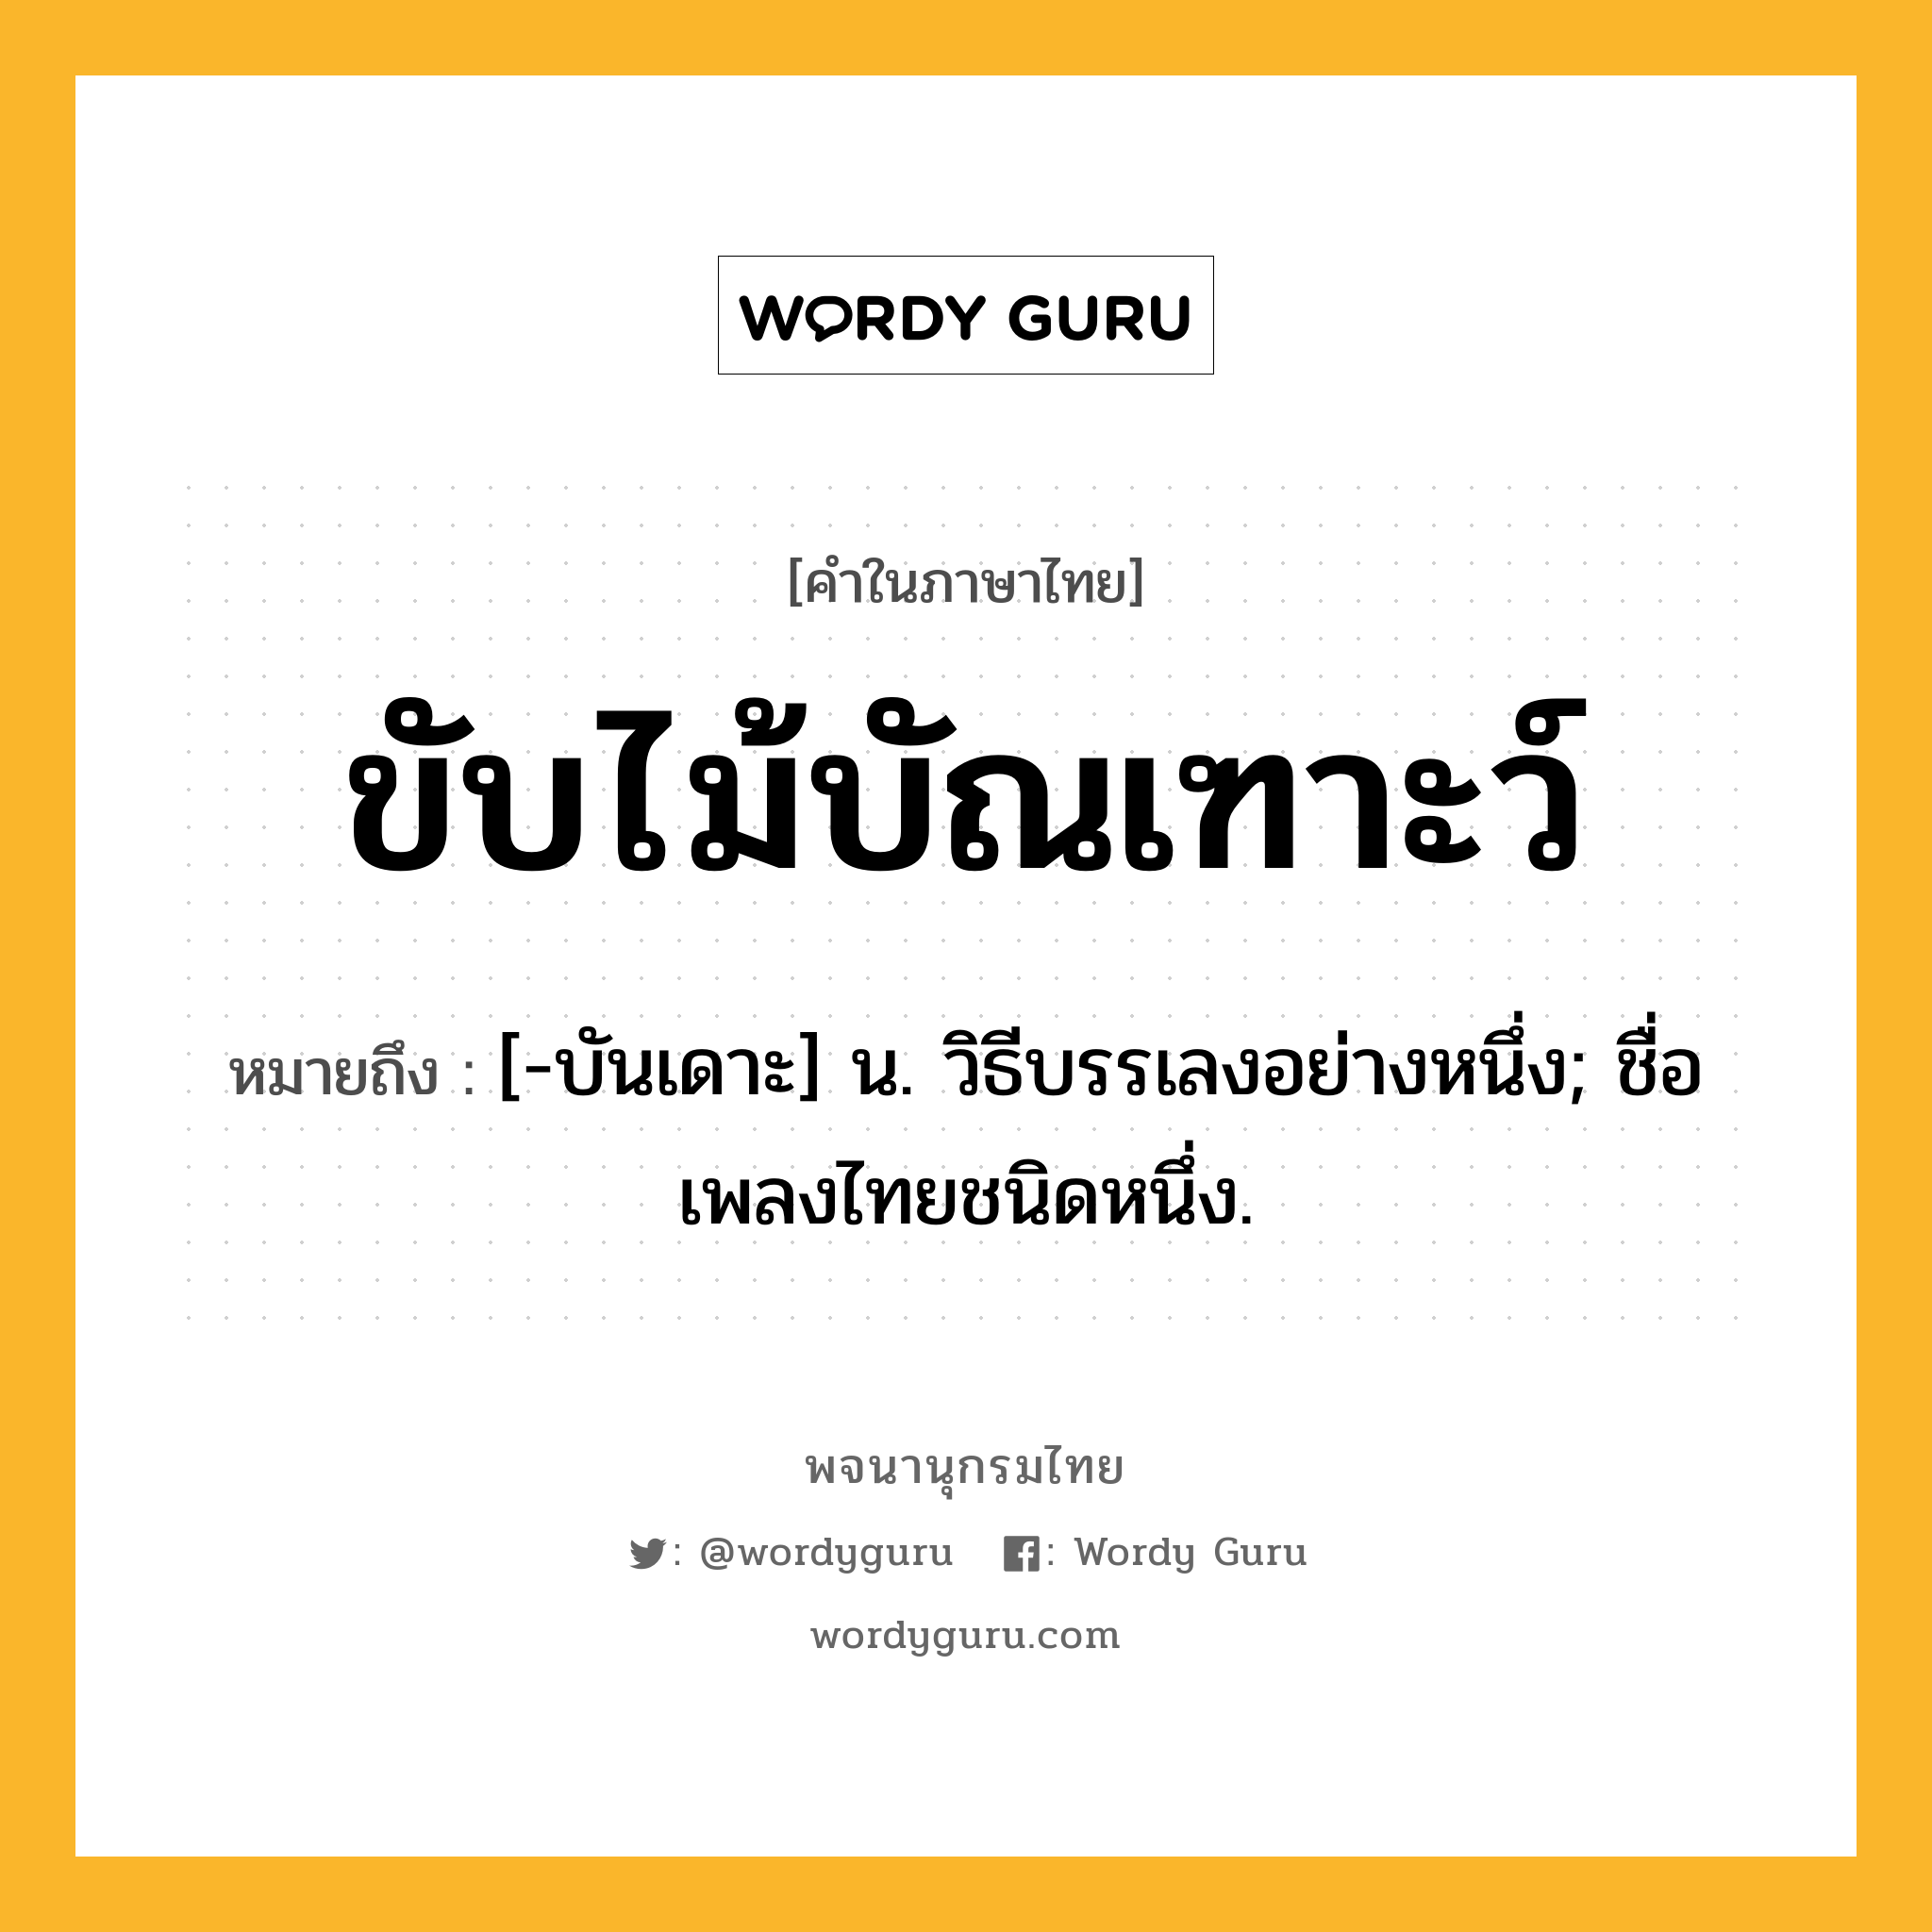 ขับไม้บัณเฑาะว์ หมายถึงอะไร?, คำในภาษาไทย ขับไม้บัณเฑาะว์ หมายถึง [-บันเดาะ] น. วิธีบรรเลงอย่างหนึ่ง; ชื่อเพลงไทยชนิดหนึ่ง.